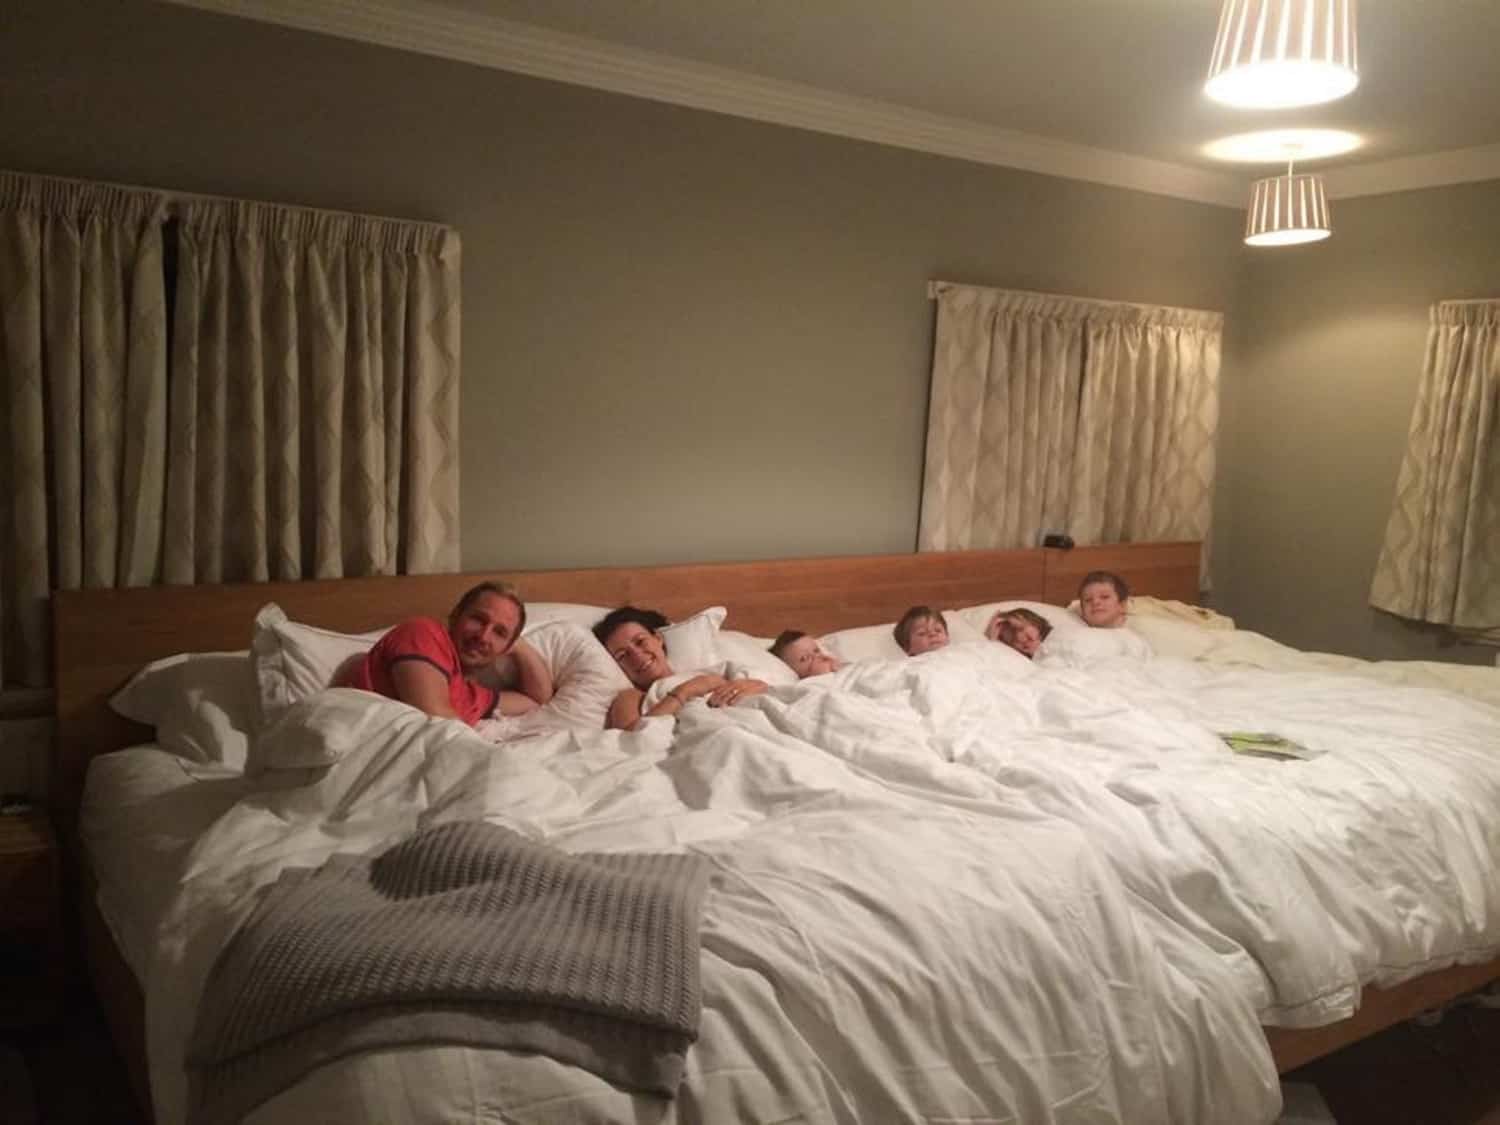 дети спят в одной кровати